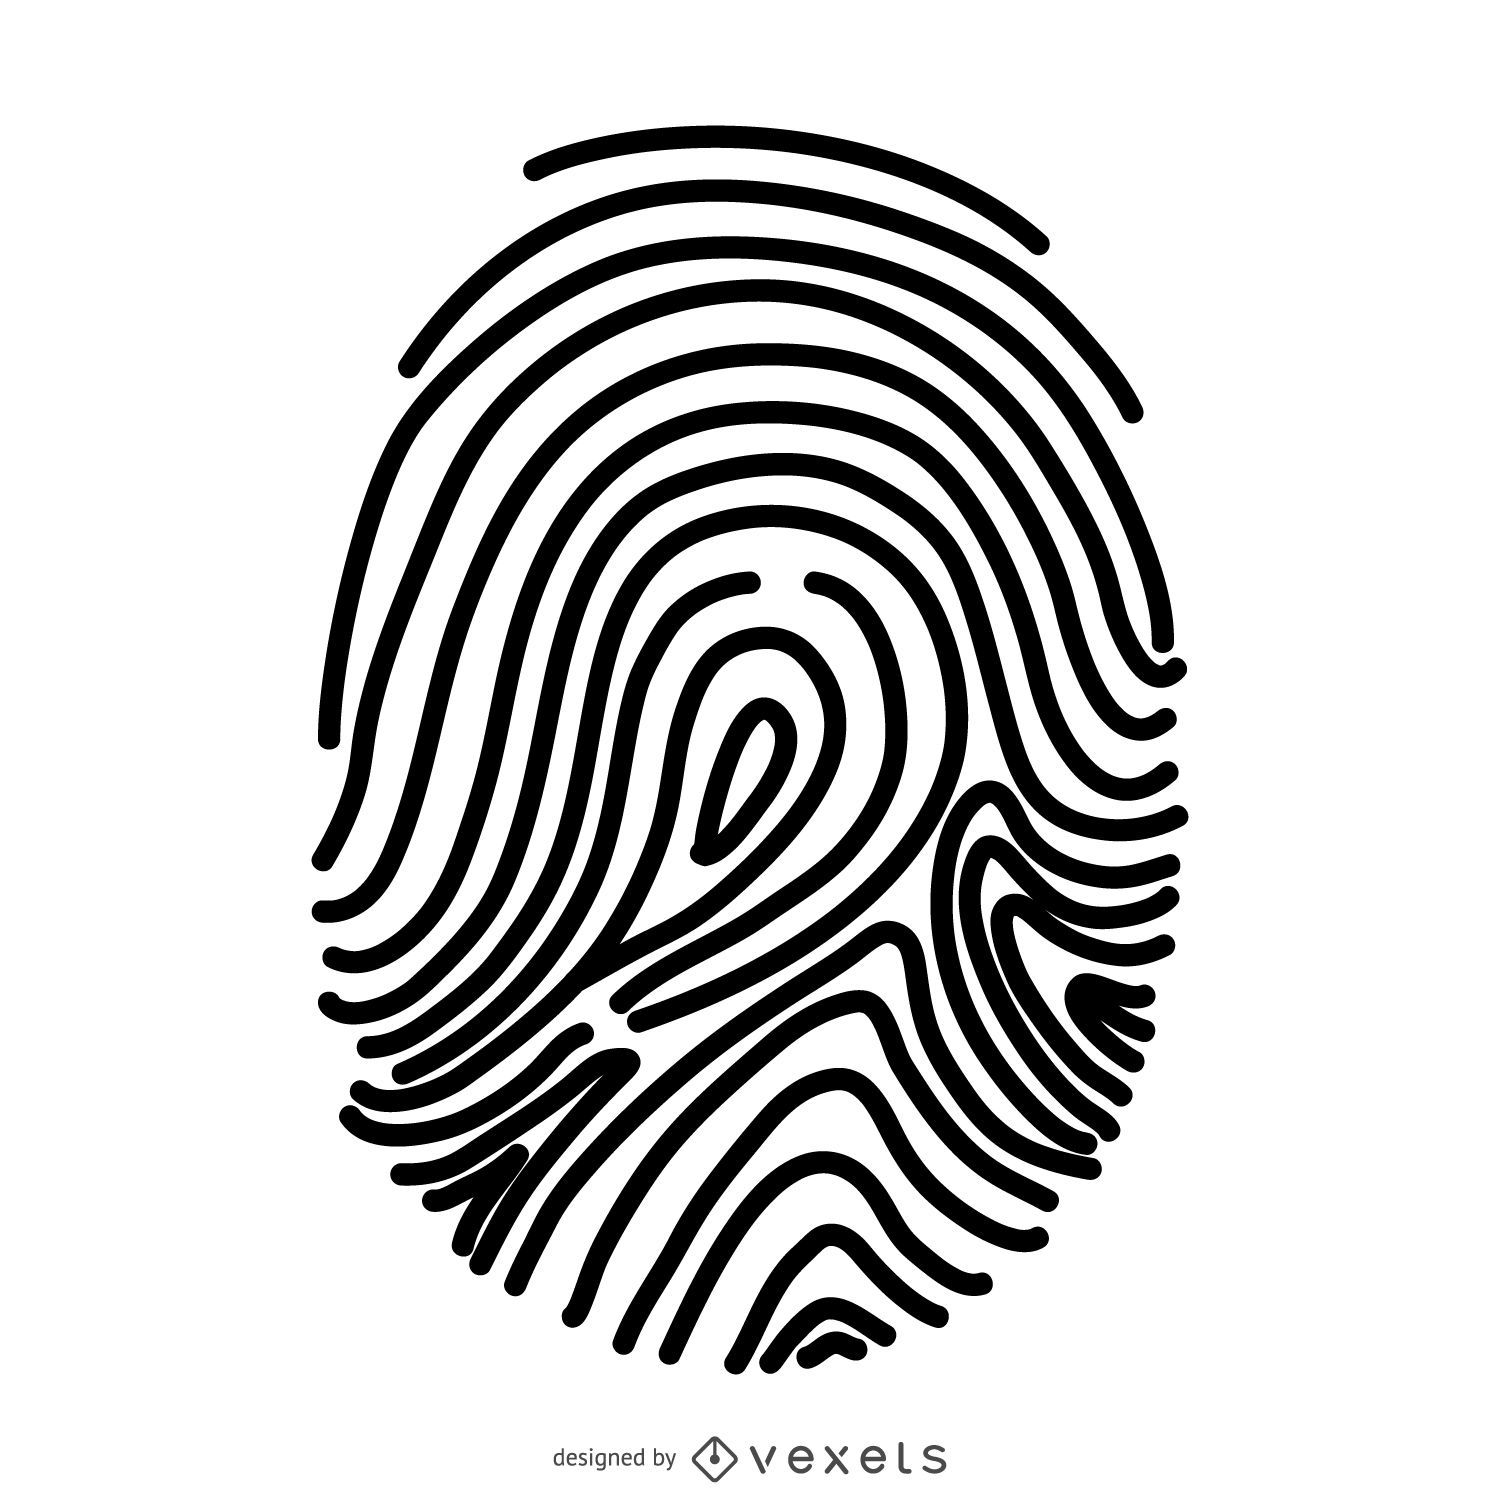 Basic fingerprint illustration